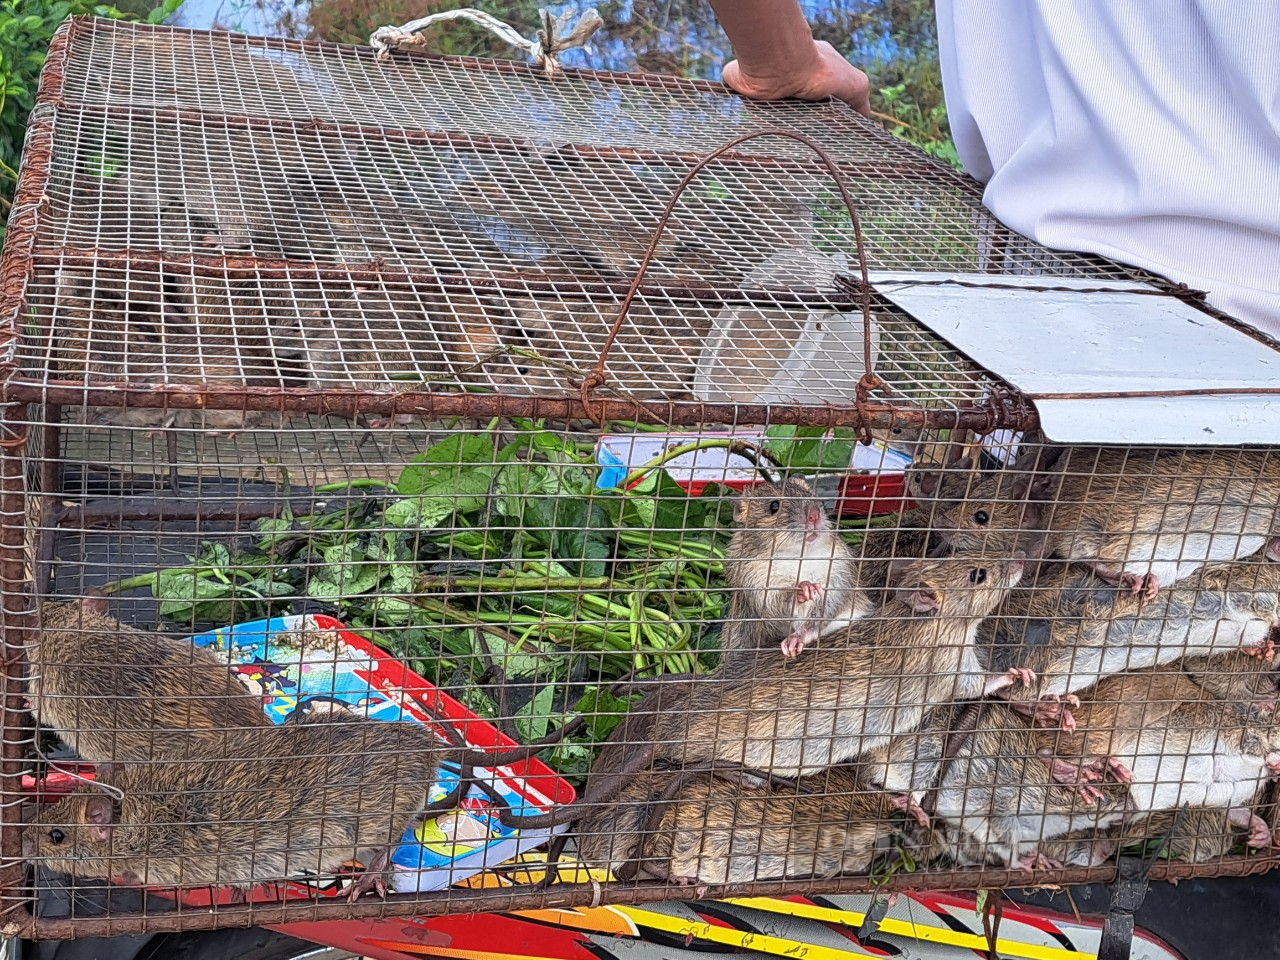 Tranh thủ mùa mưa, nông dân Hà Tĩnh ra quân diệt chuột bảo vệ mùa màng lại bán được giá cao - Ảnh 7.